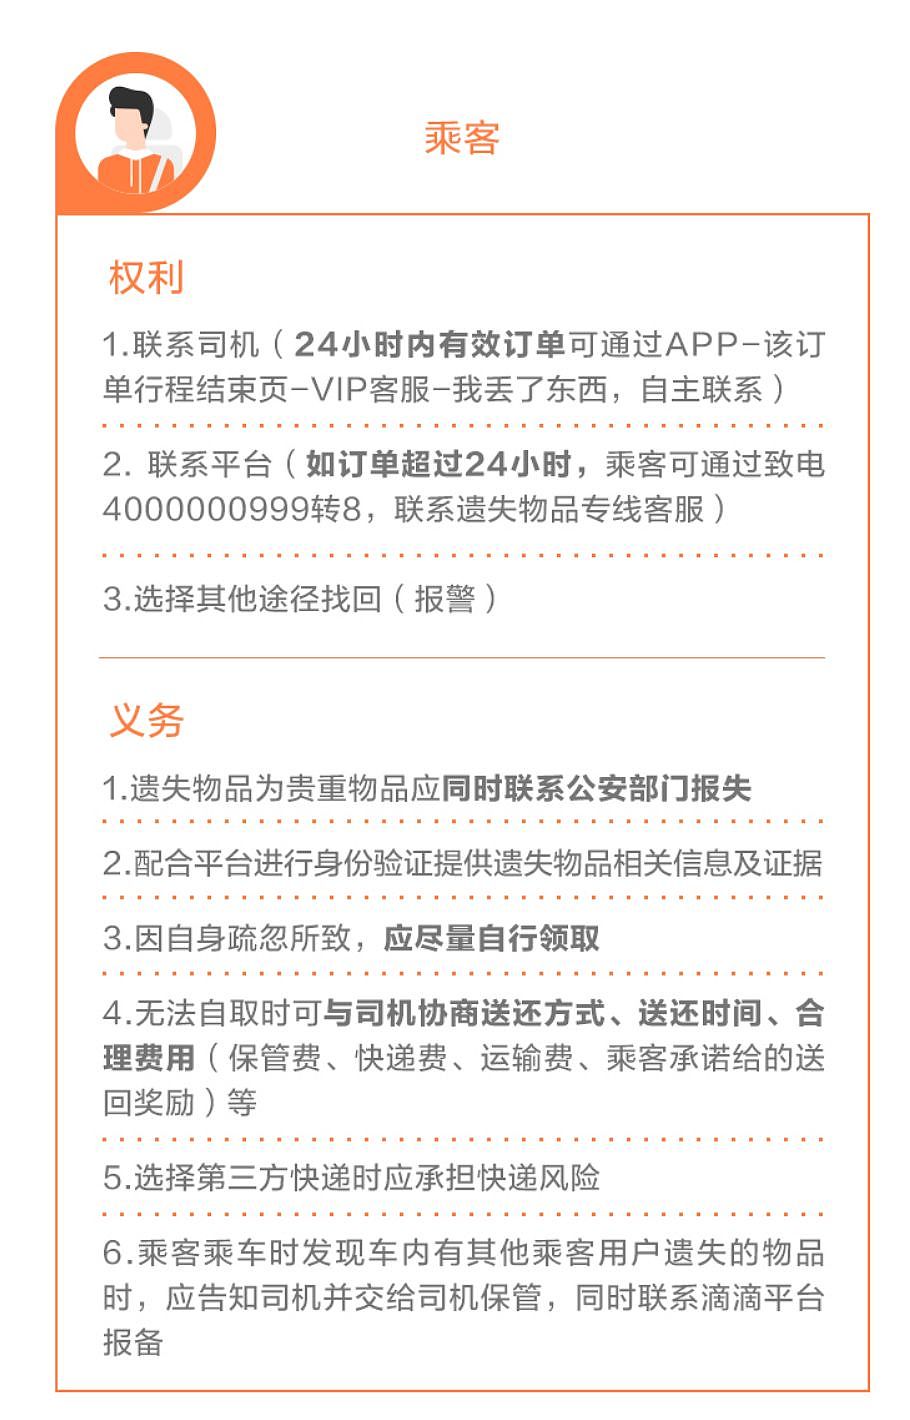 搜狐社交 App「狐友」下架一周；「互联网女皇」发布 2019 年度报告；特斯拉未来考虑进入采矿业 | 极客早知道 - 6